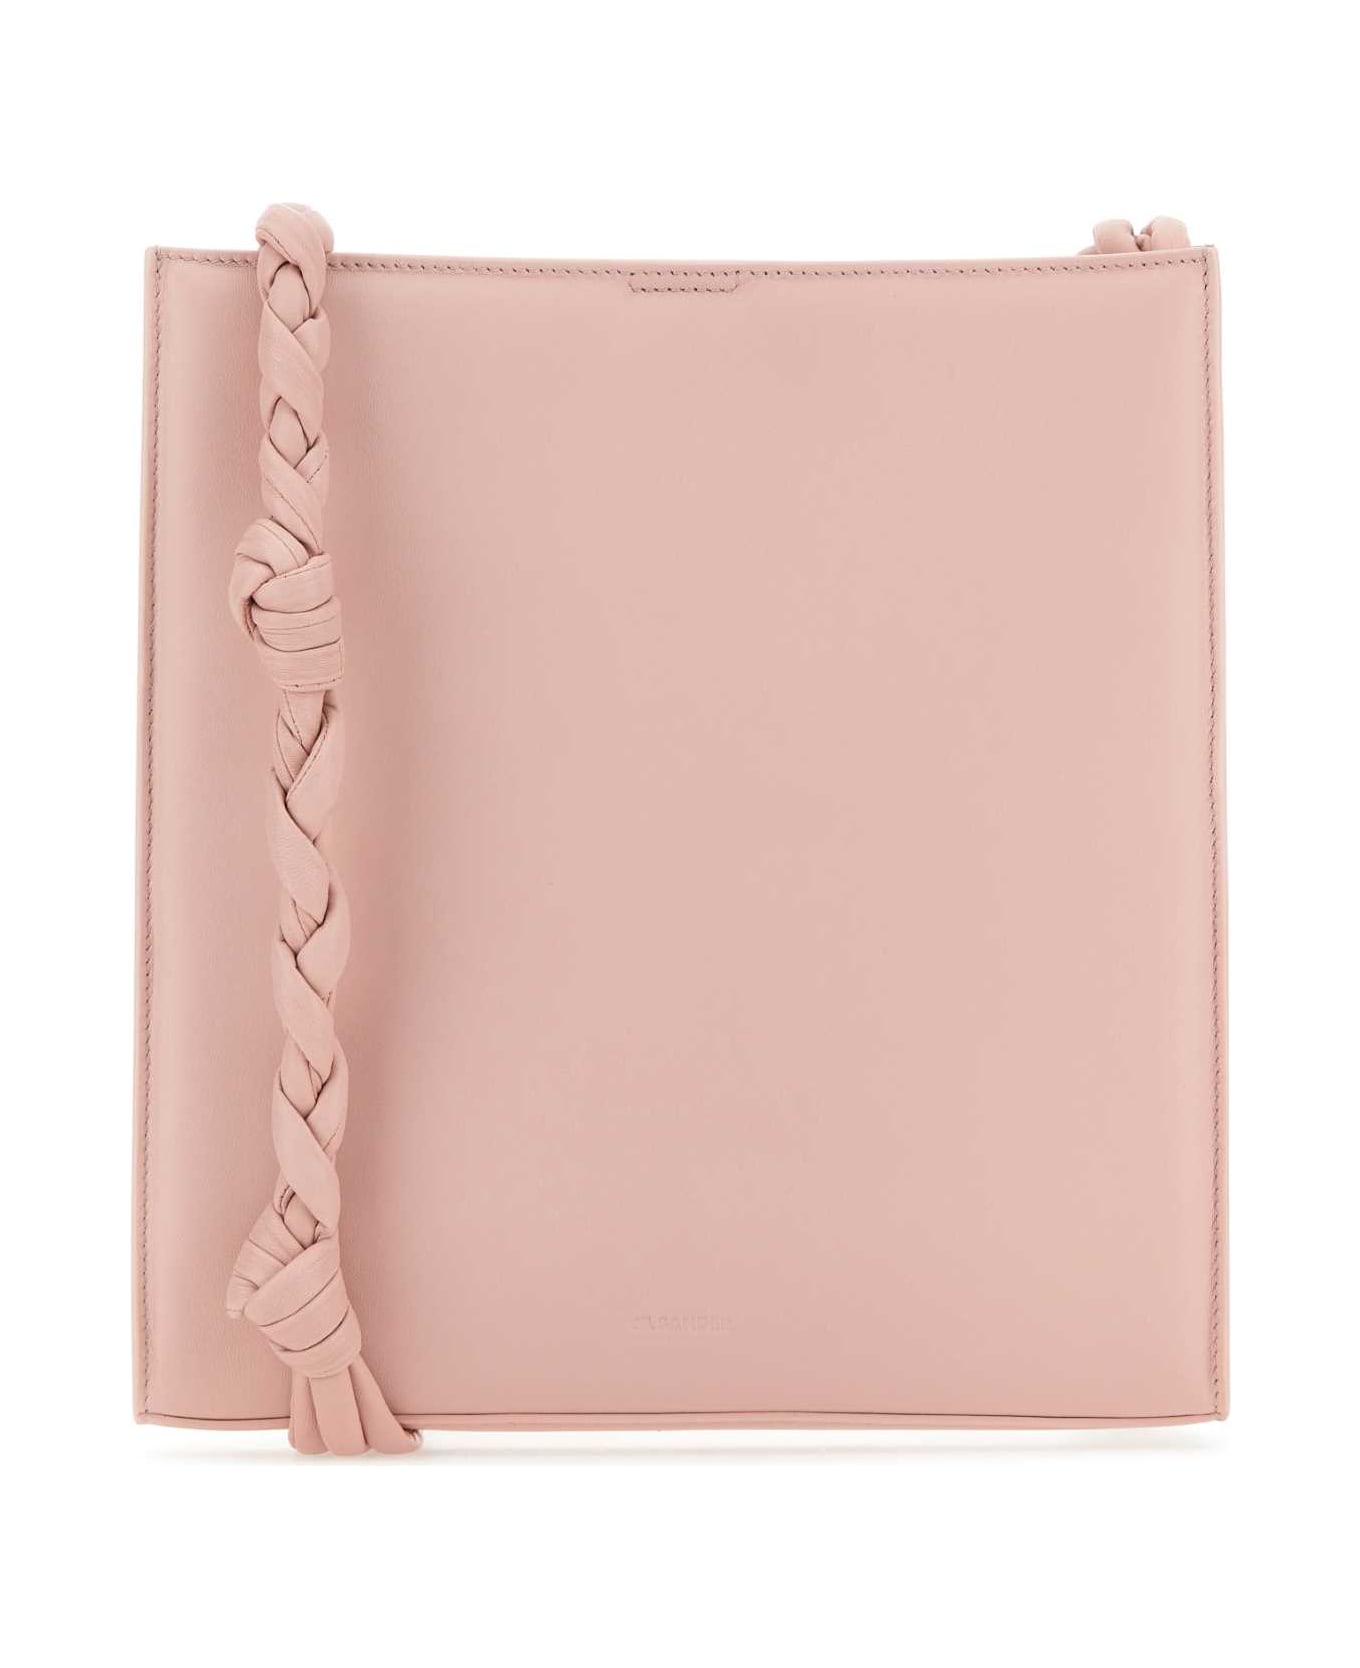 Jil Sander Pink Leather Tangle Shoulder Bag - 663 トートバッグ